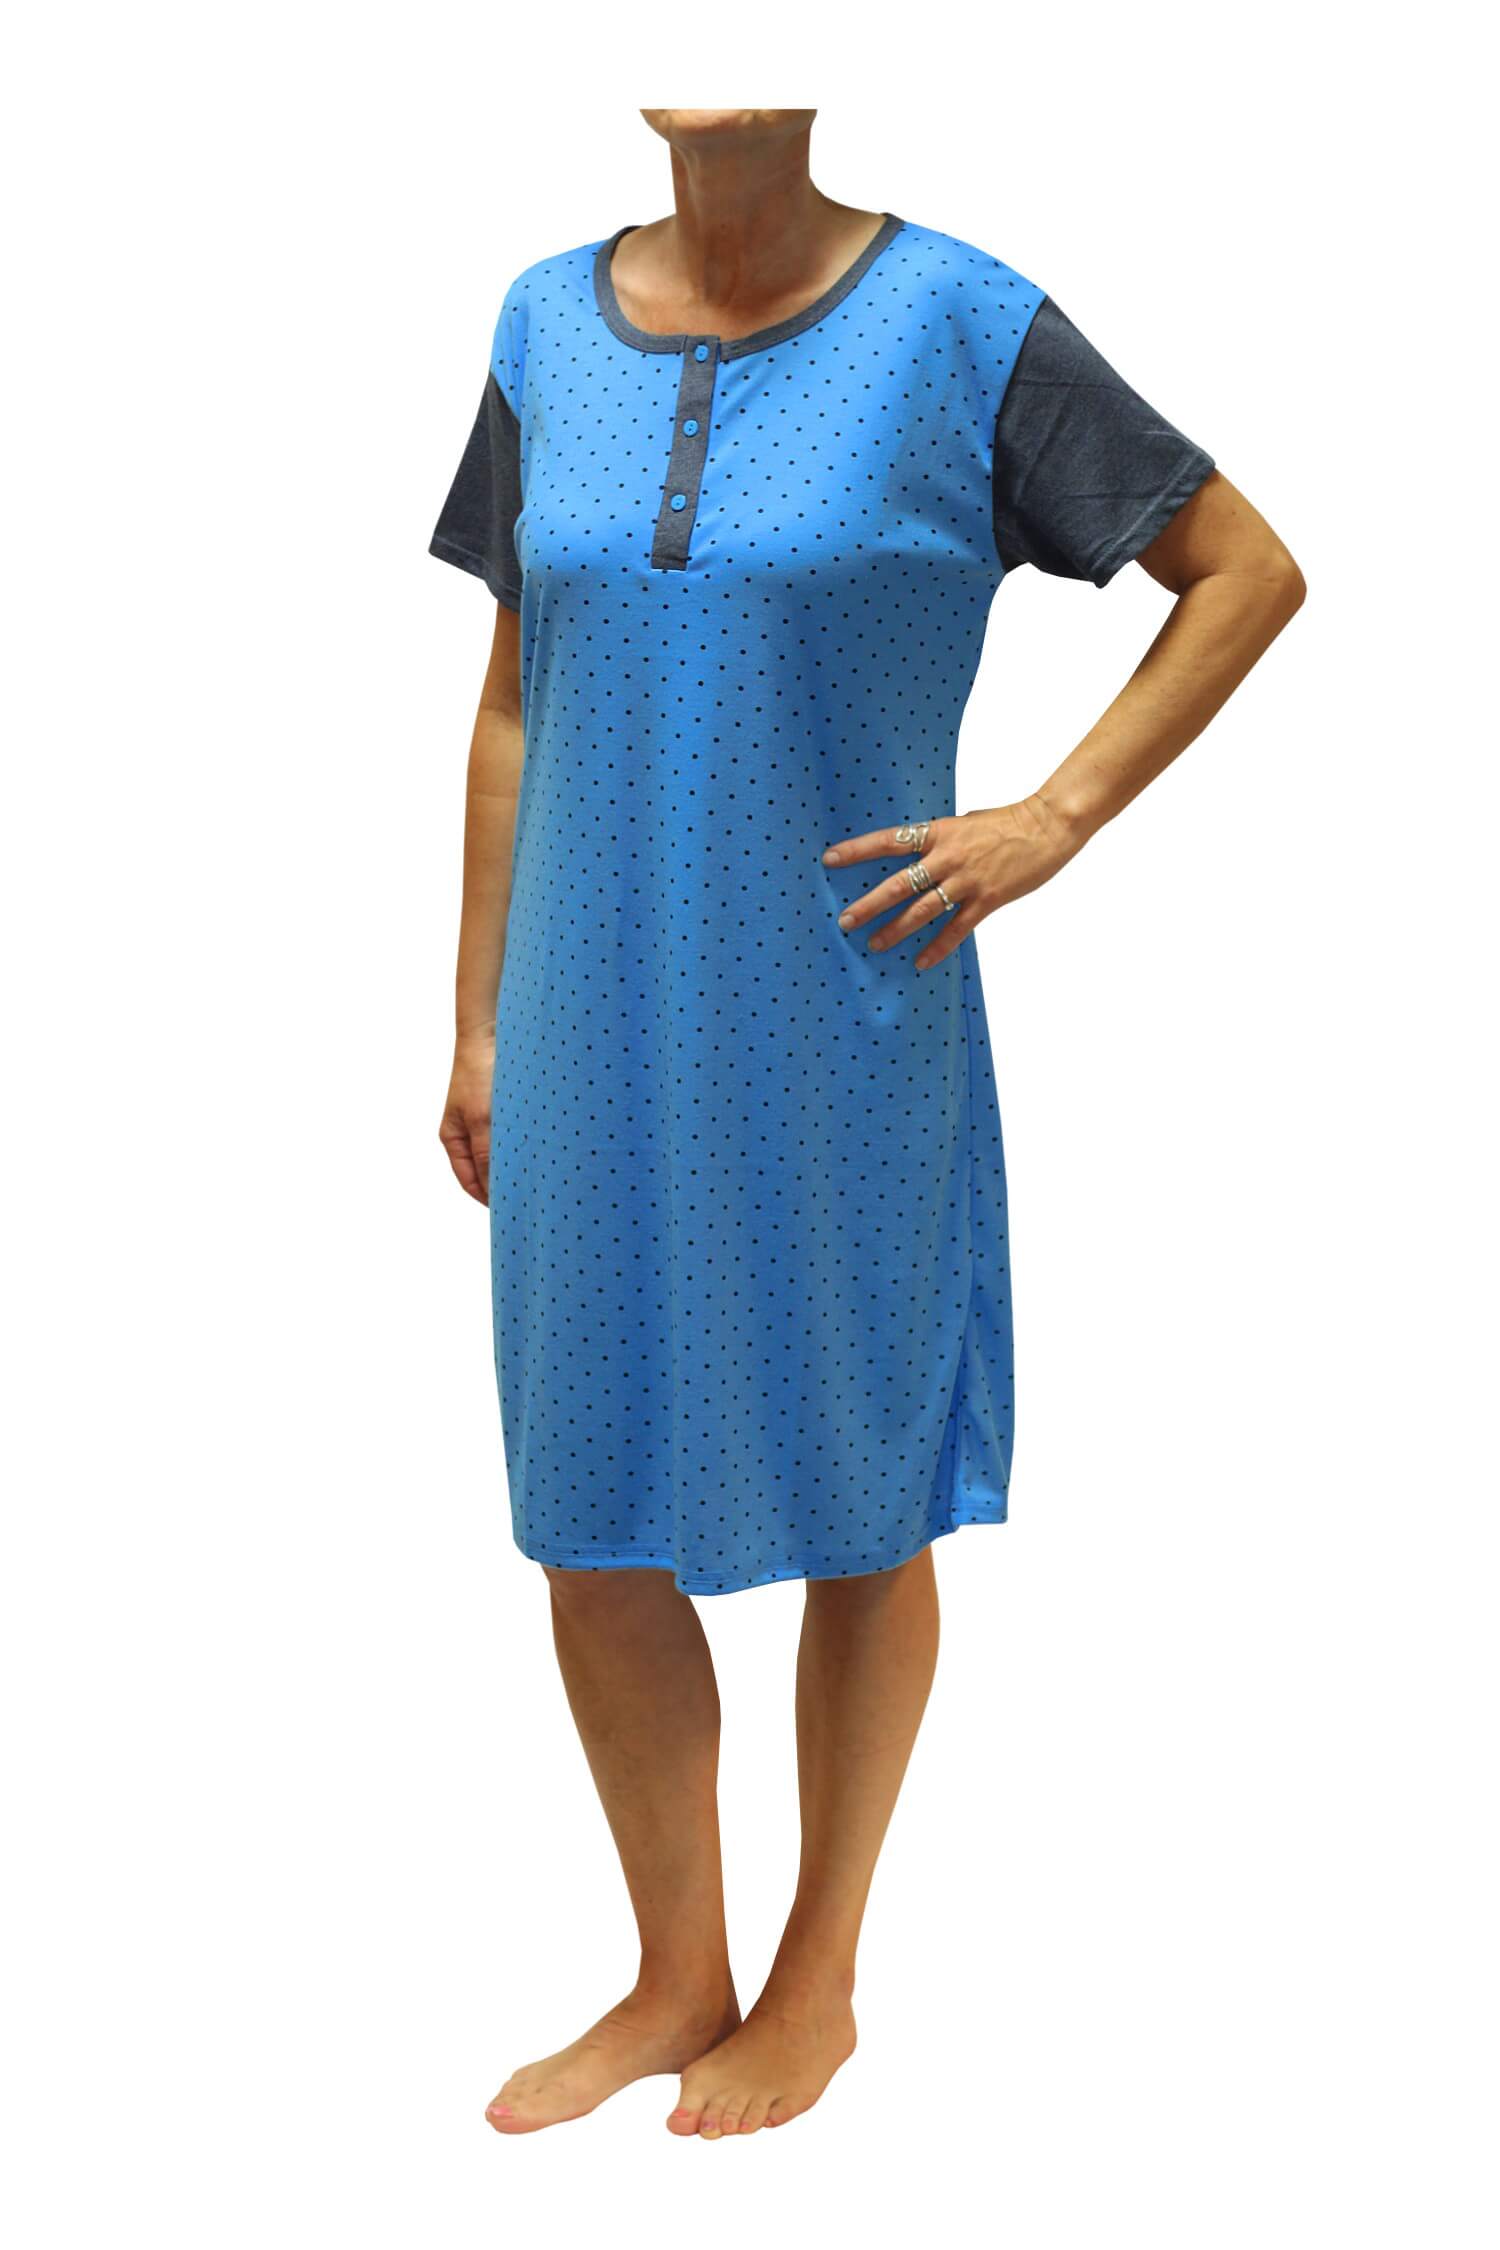 Adéla dámská noční košile s puntíky DNU329-NT XL modrá